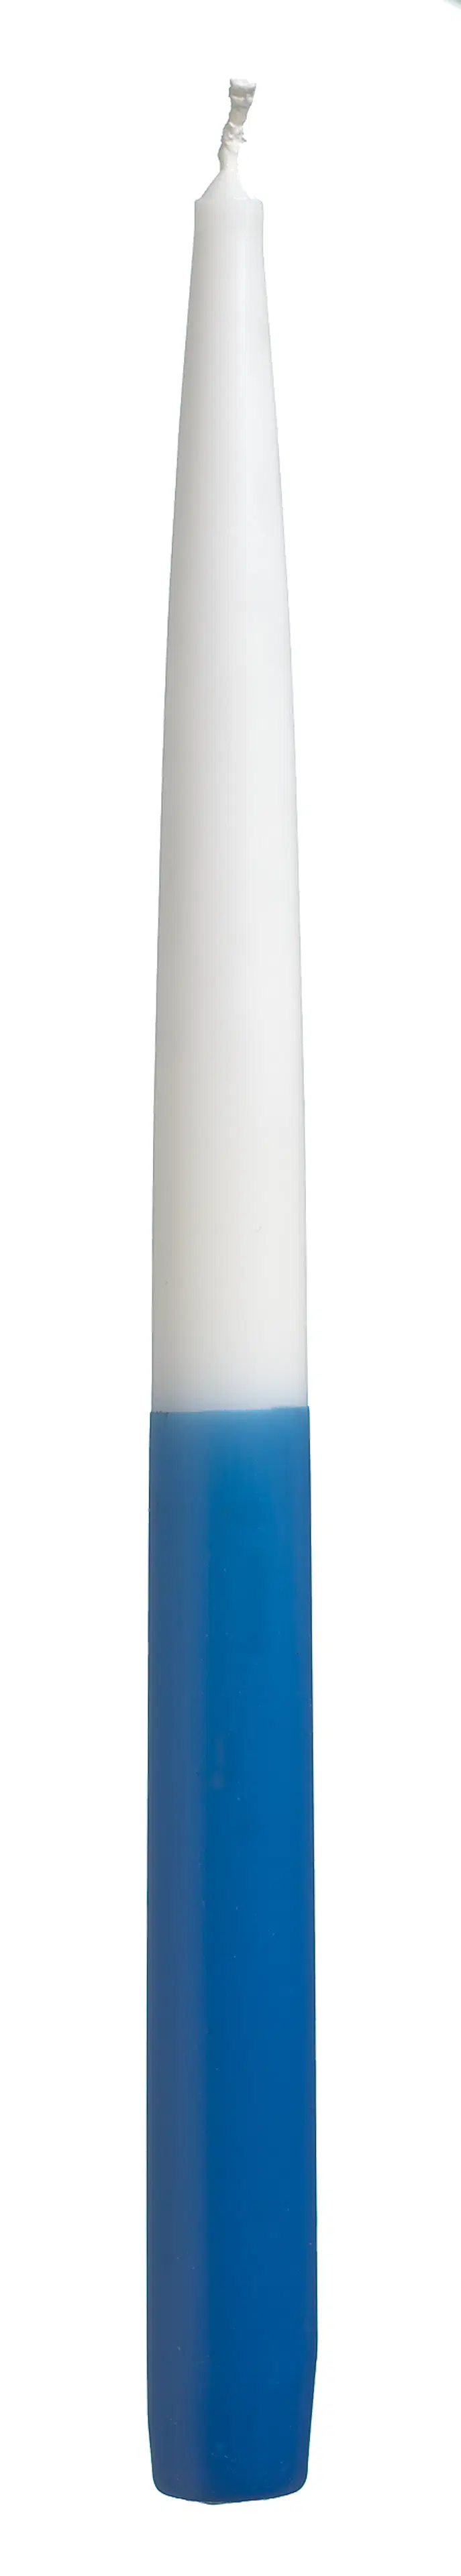 Havi antiikkikynttilä itsenäisyyskynttilä  sini-valkoinen 28cm 2kpl 8 h